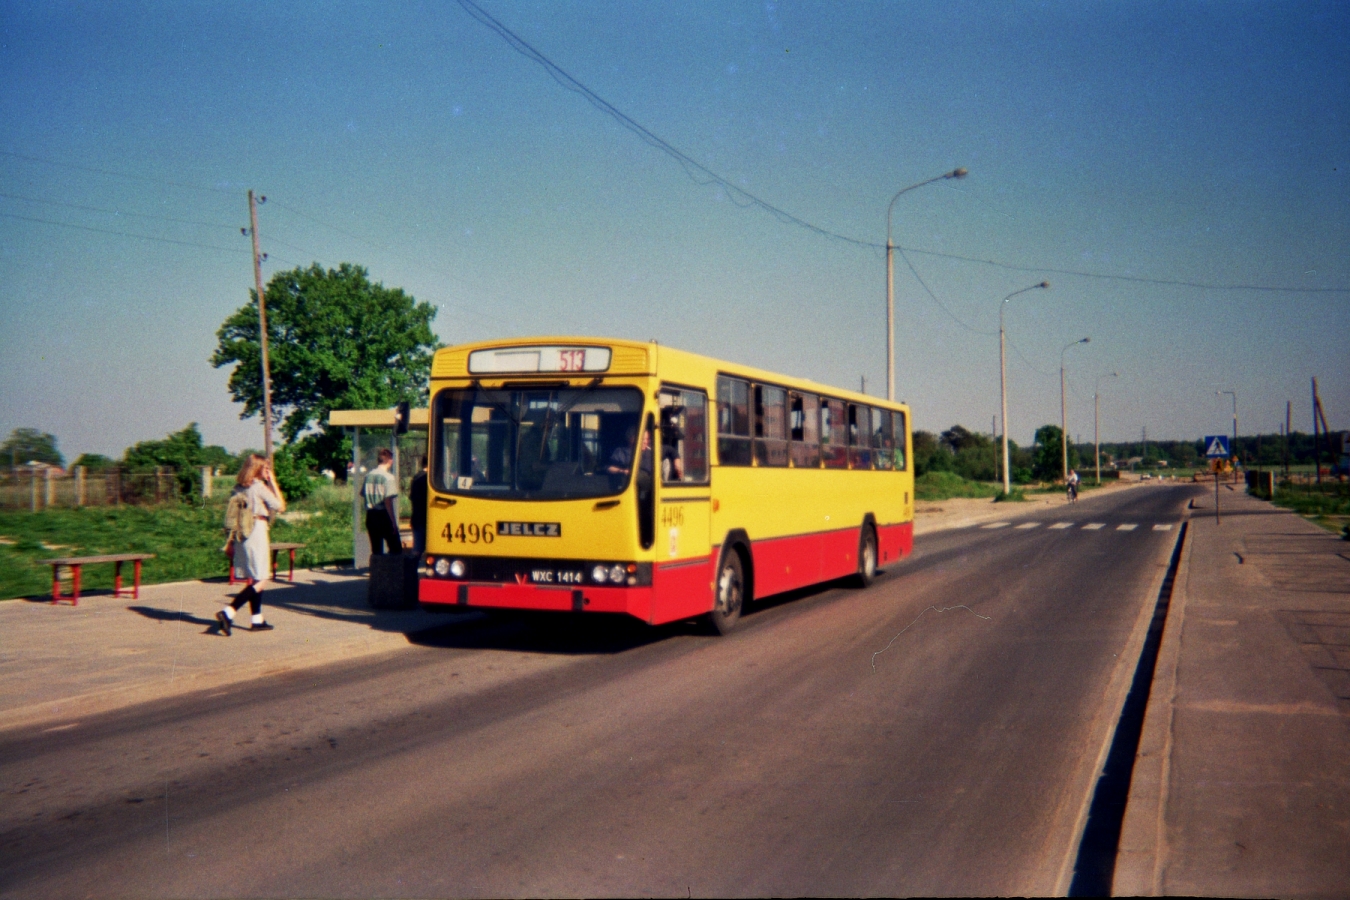 4496
Prowizoryczna pętla Natolin-Kabaty.
Funkcjonowała w czasach, gdy ul. Rosoła dochodziła do Wąwozowej, a Wąwozowa z kolei była jeszcze wielkim bagnem.
Autobusy zawracały używając skrótu przez osiedlowy parking.

Jelcz M120, produkcja 1994, NG 2001.

Foto: P.B. Jezierski
